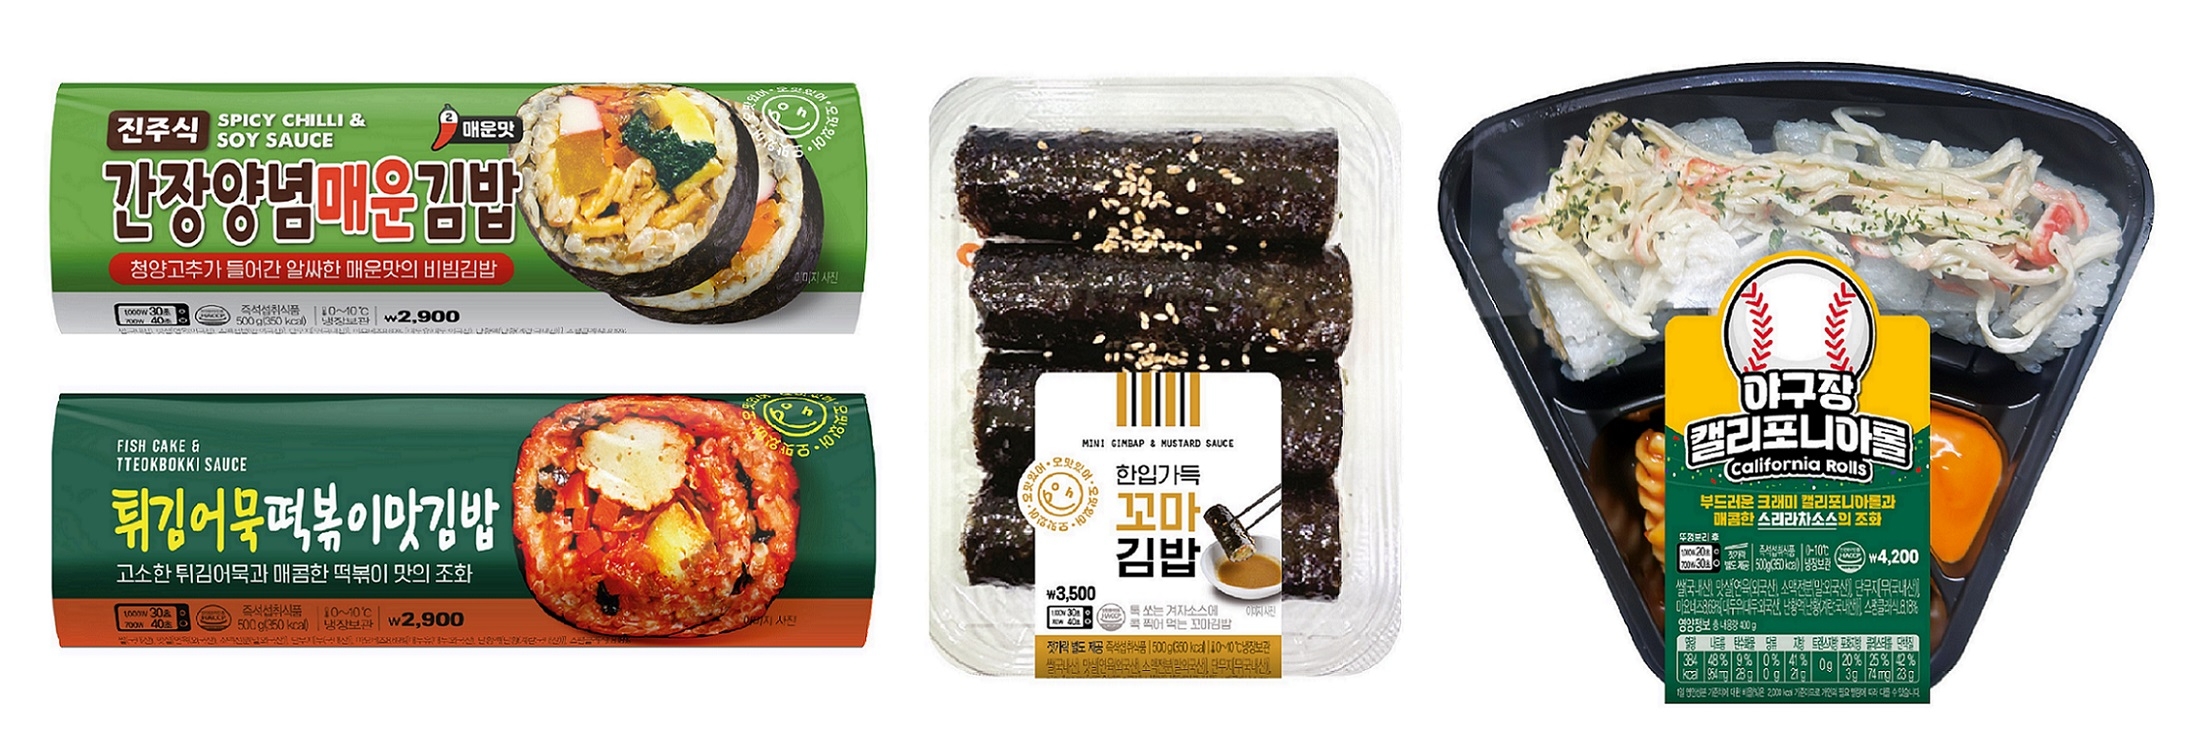 이마트24, 튀김어묵떡볶이김밥, 꼬마김밥 등 차별화김밥 상품 판매